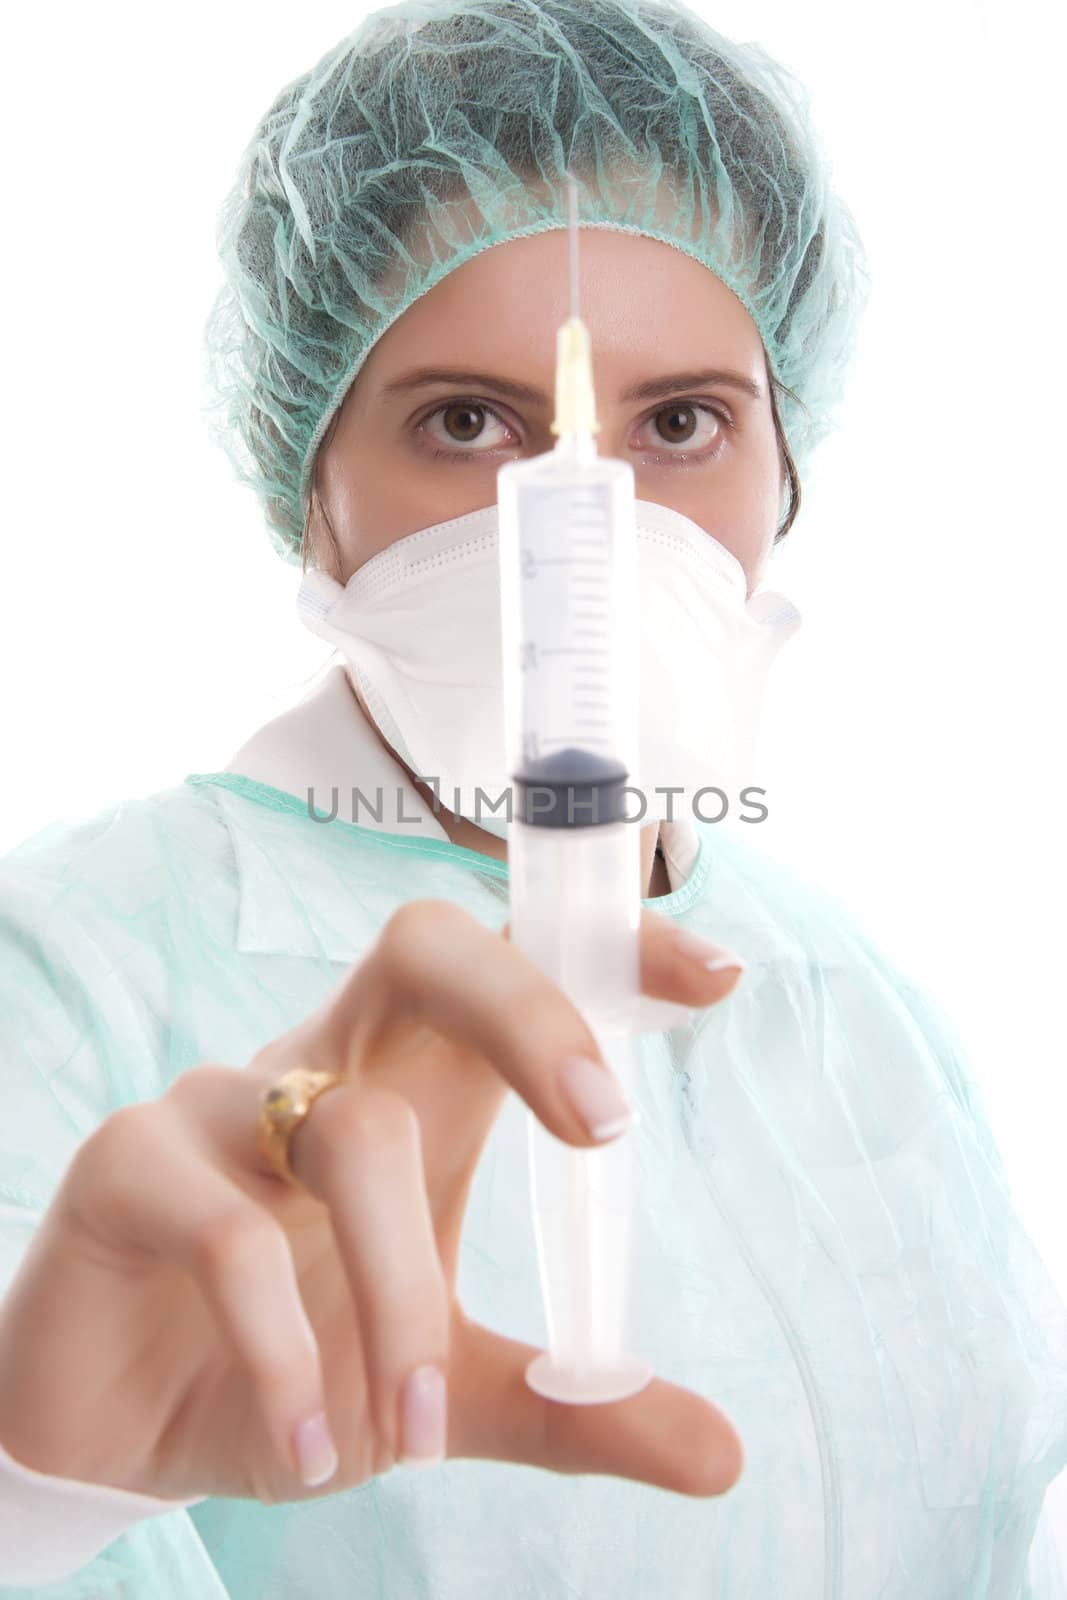 Nurse holding a syringe by jfcalheiros